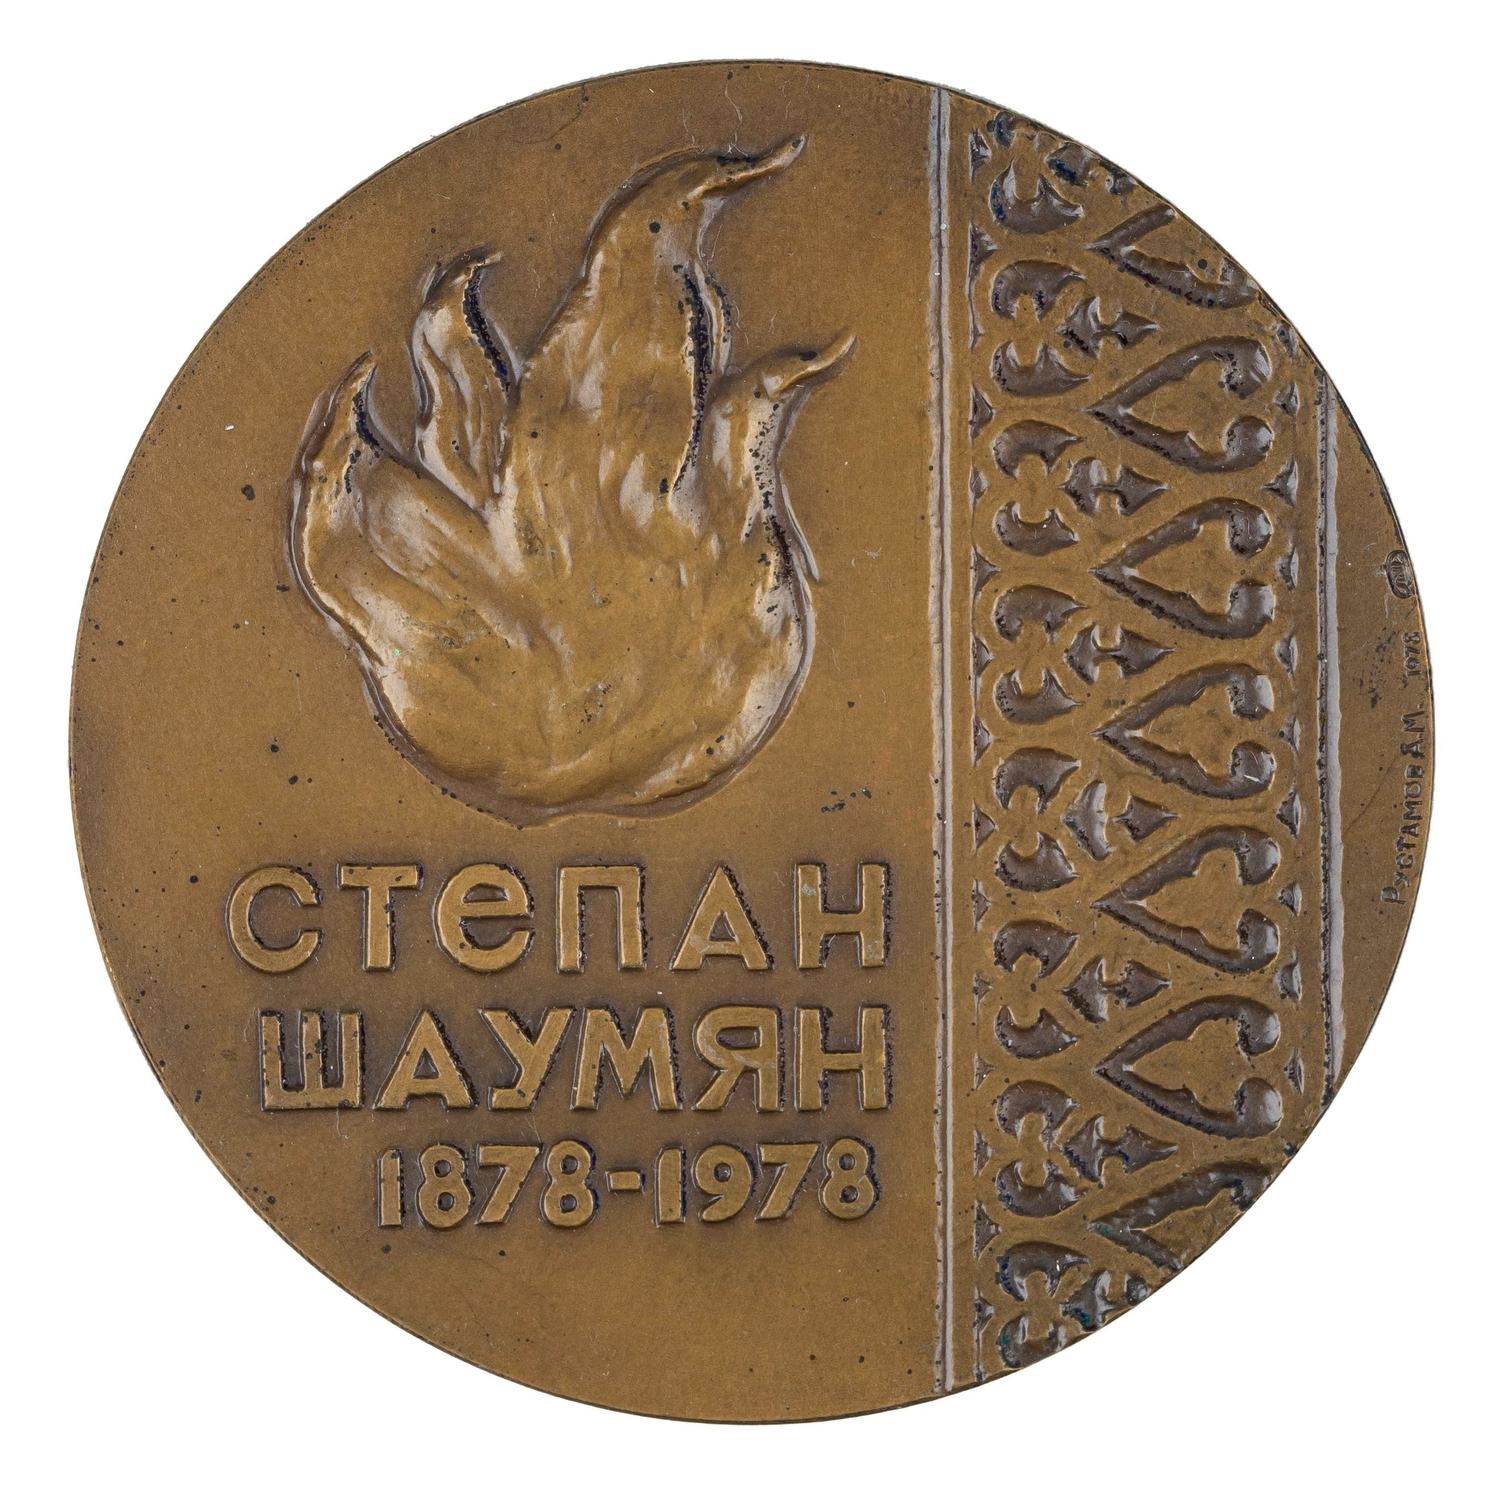 Рустамов А.М. Медаль памятная «Степан Шаумян. 1878 - 1978». ЛМД. 1978.